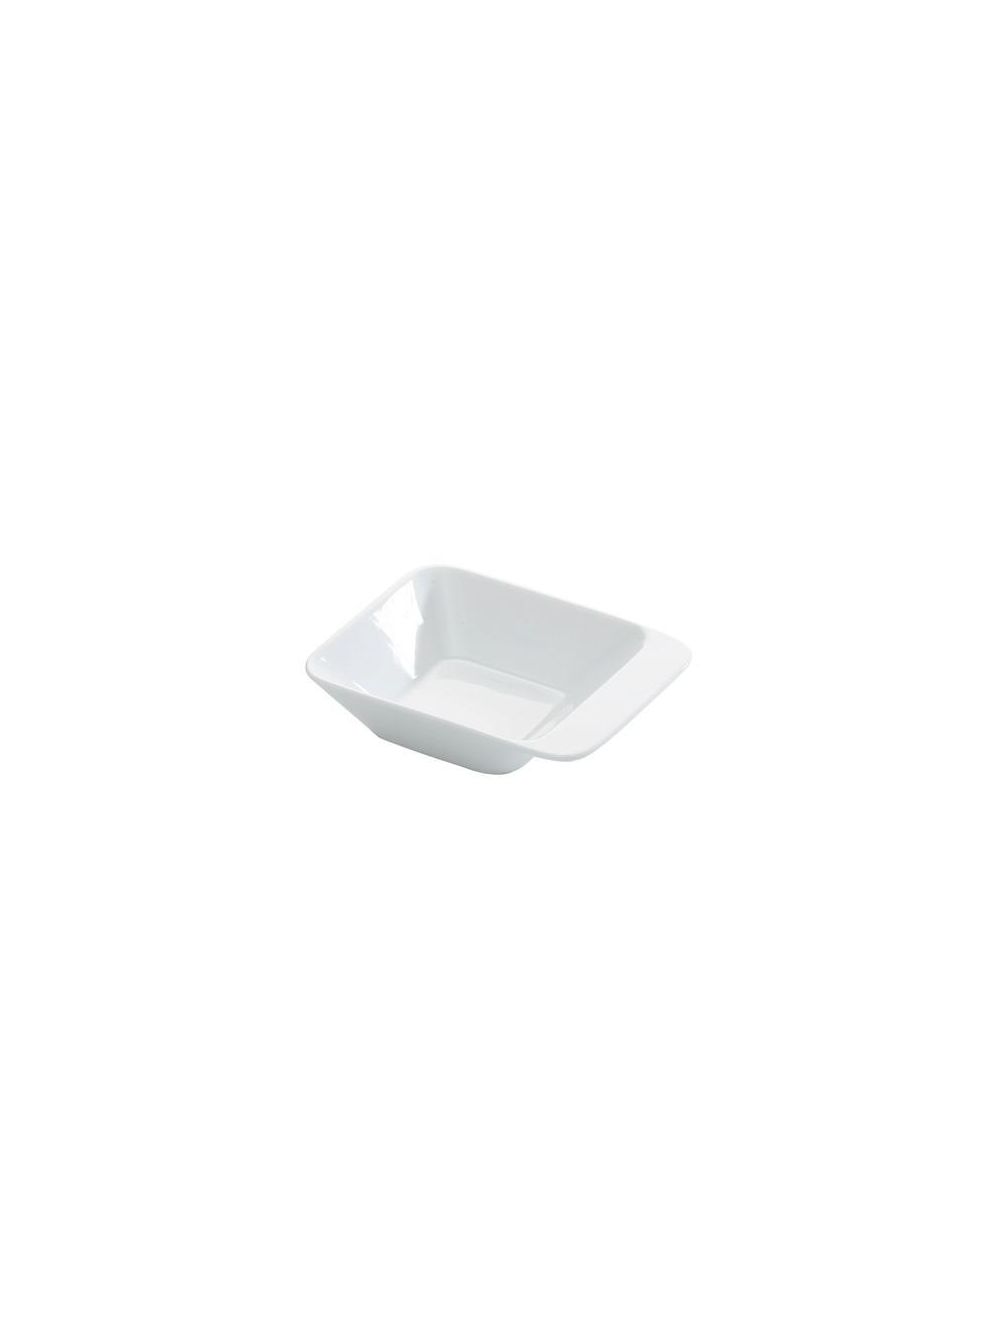 Tescoma Ceramic Dressing Dip Bowl - White